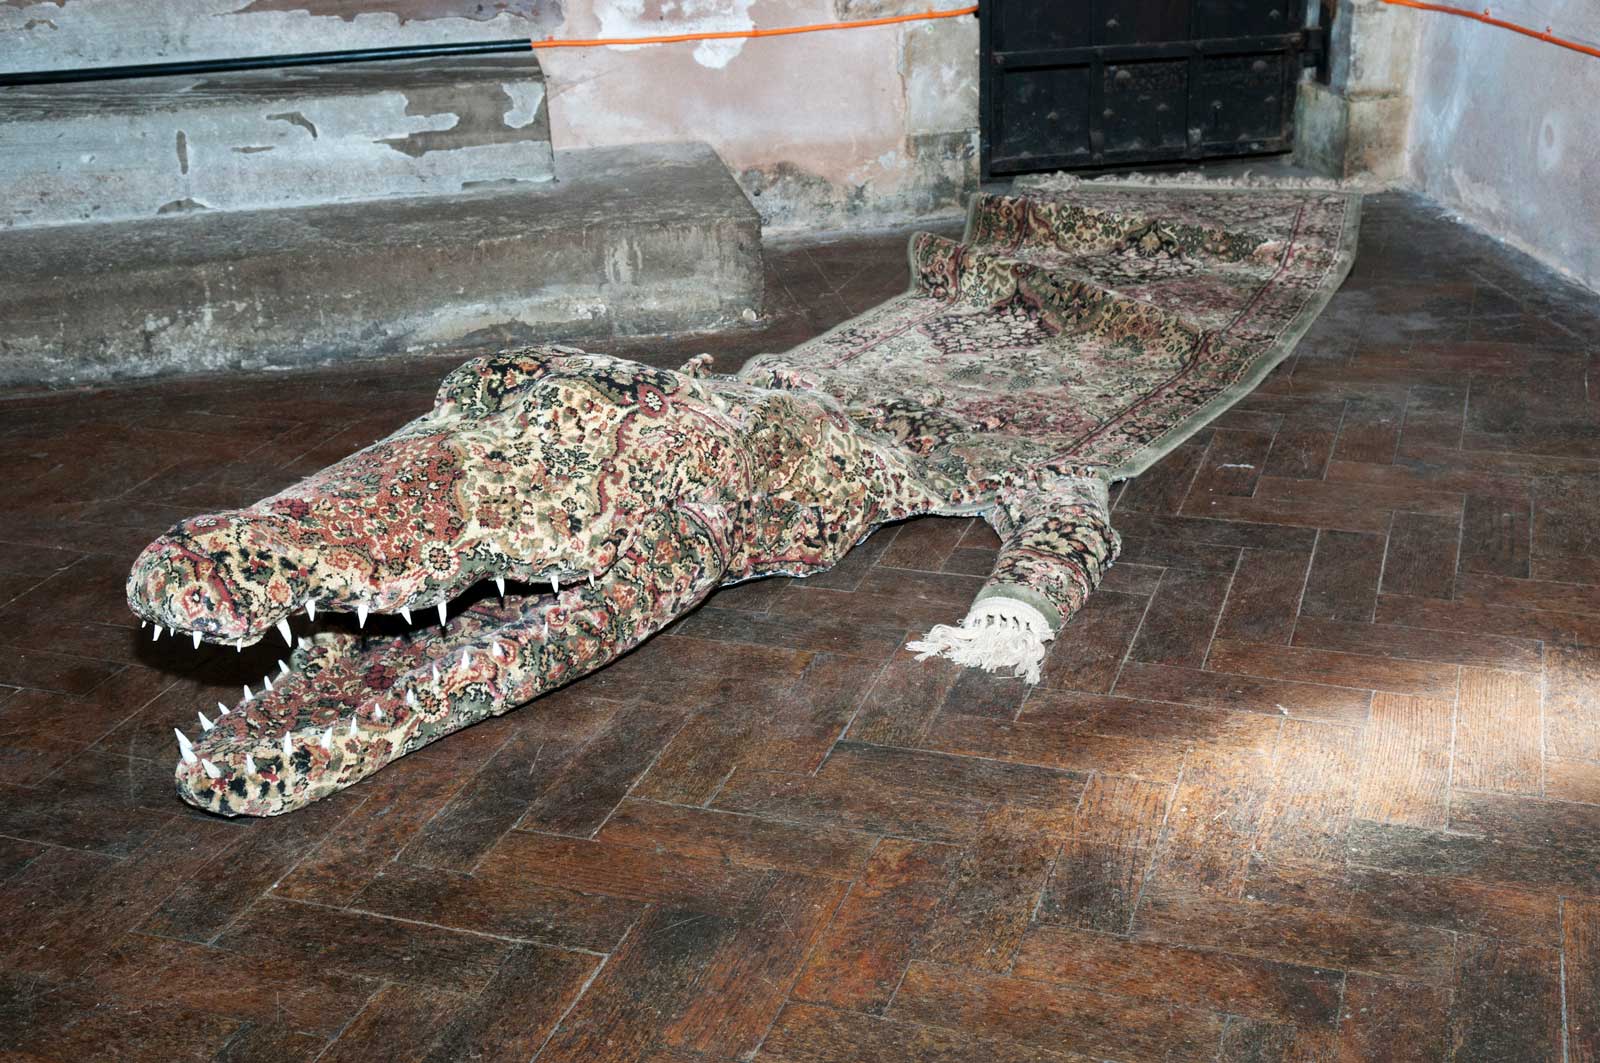 Persian Croc